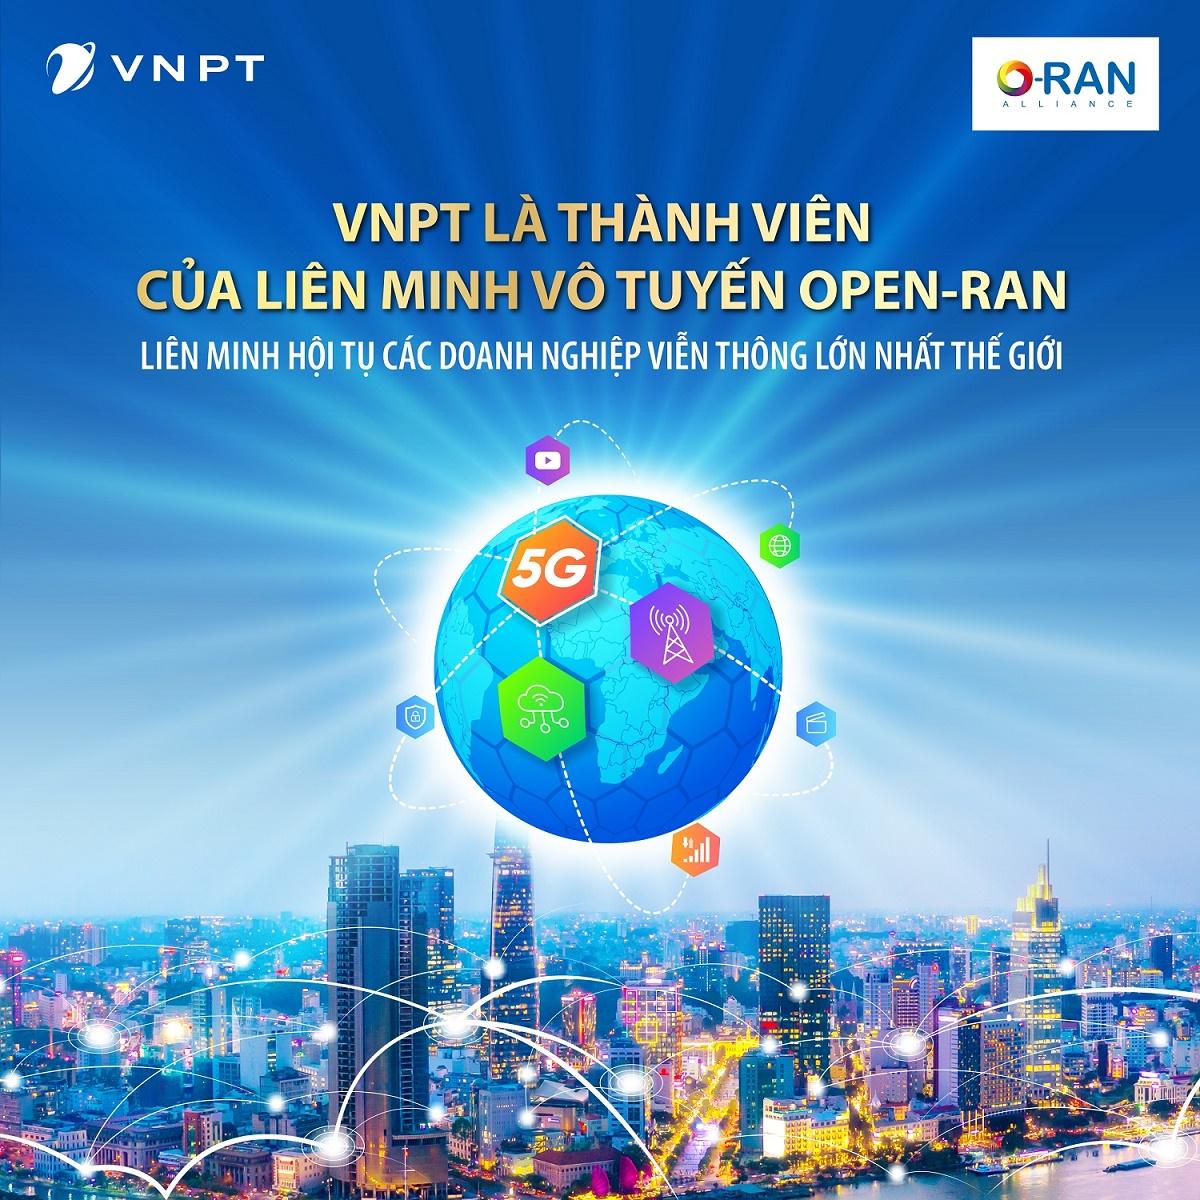 Tập đoàn VNPT chính thức là thành viên của liên minh Vô tuyến Open-RAN